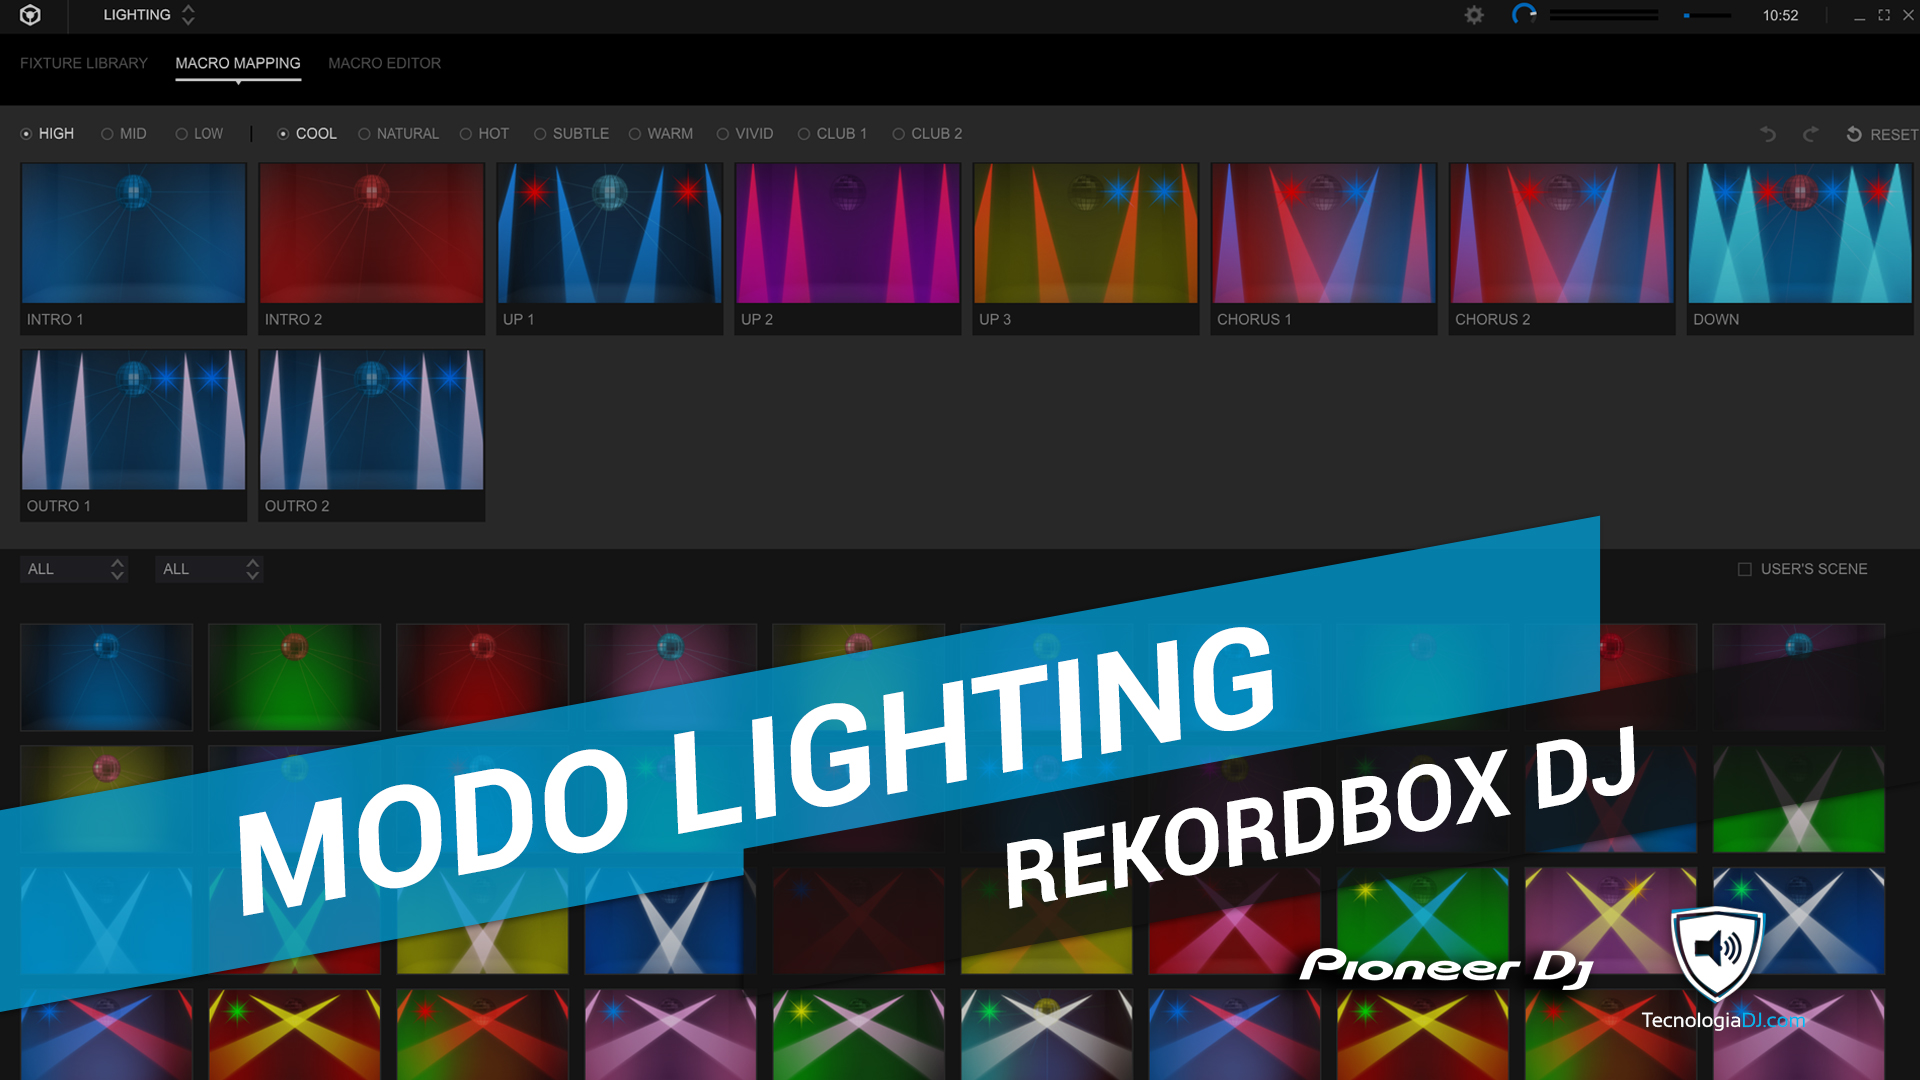 ¿Cómo funciona el Modo Lighting en Rekordbox DJ?